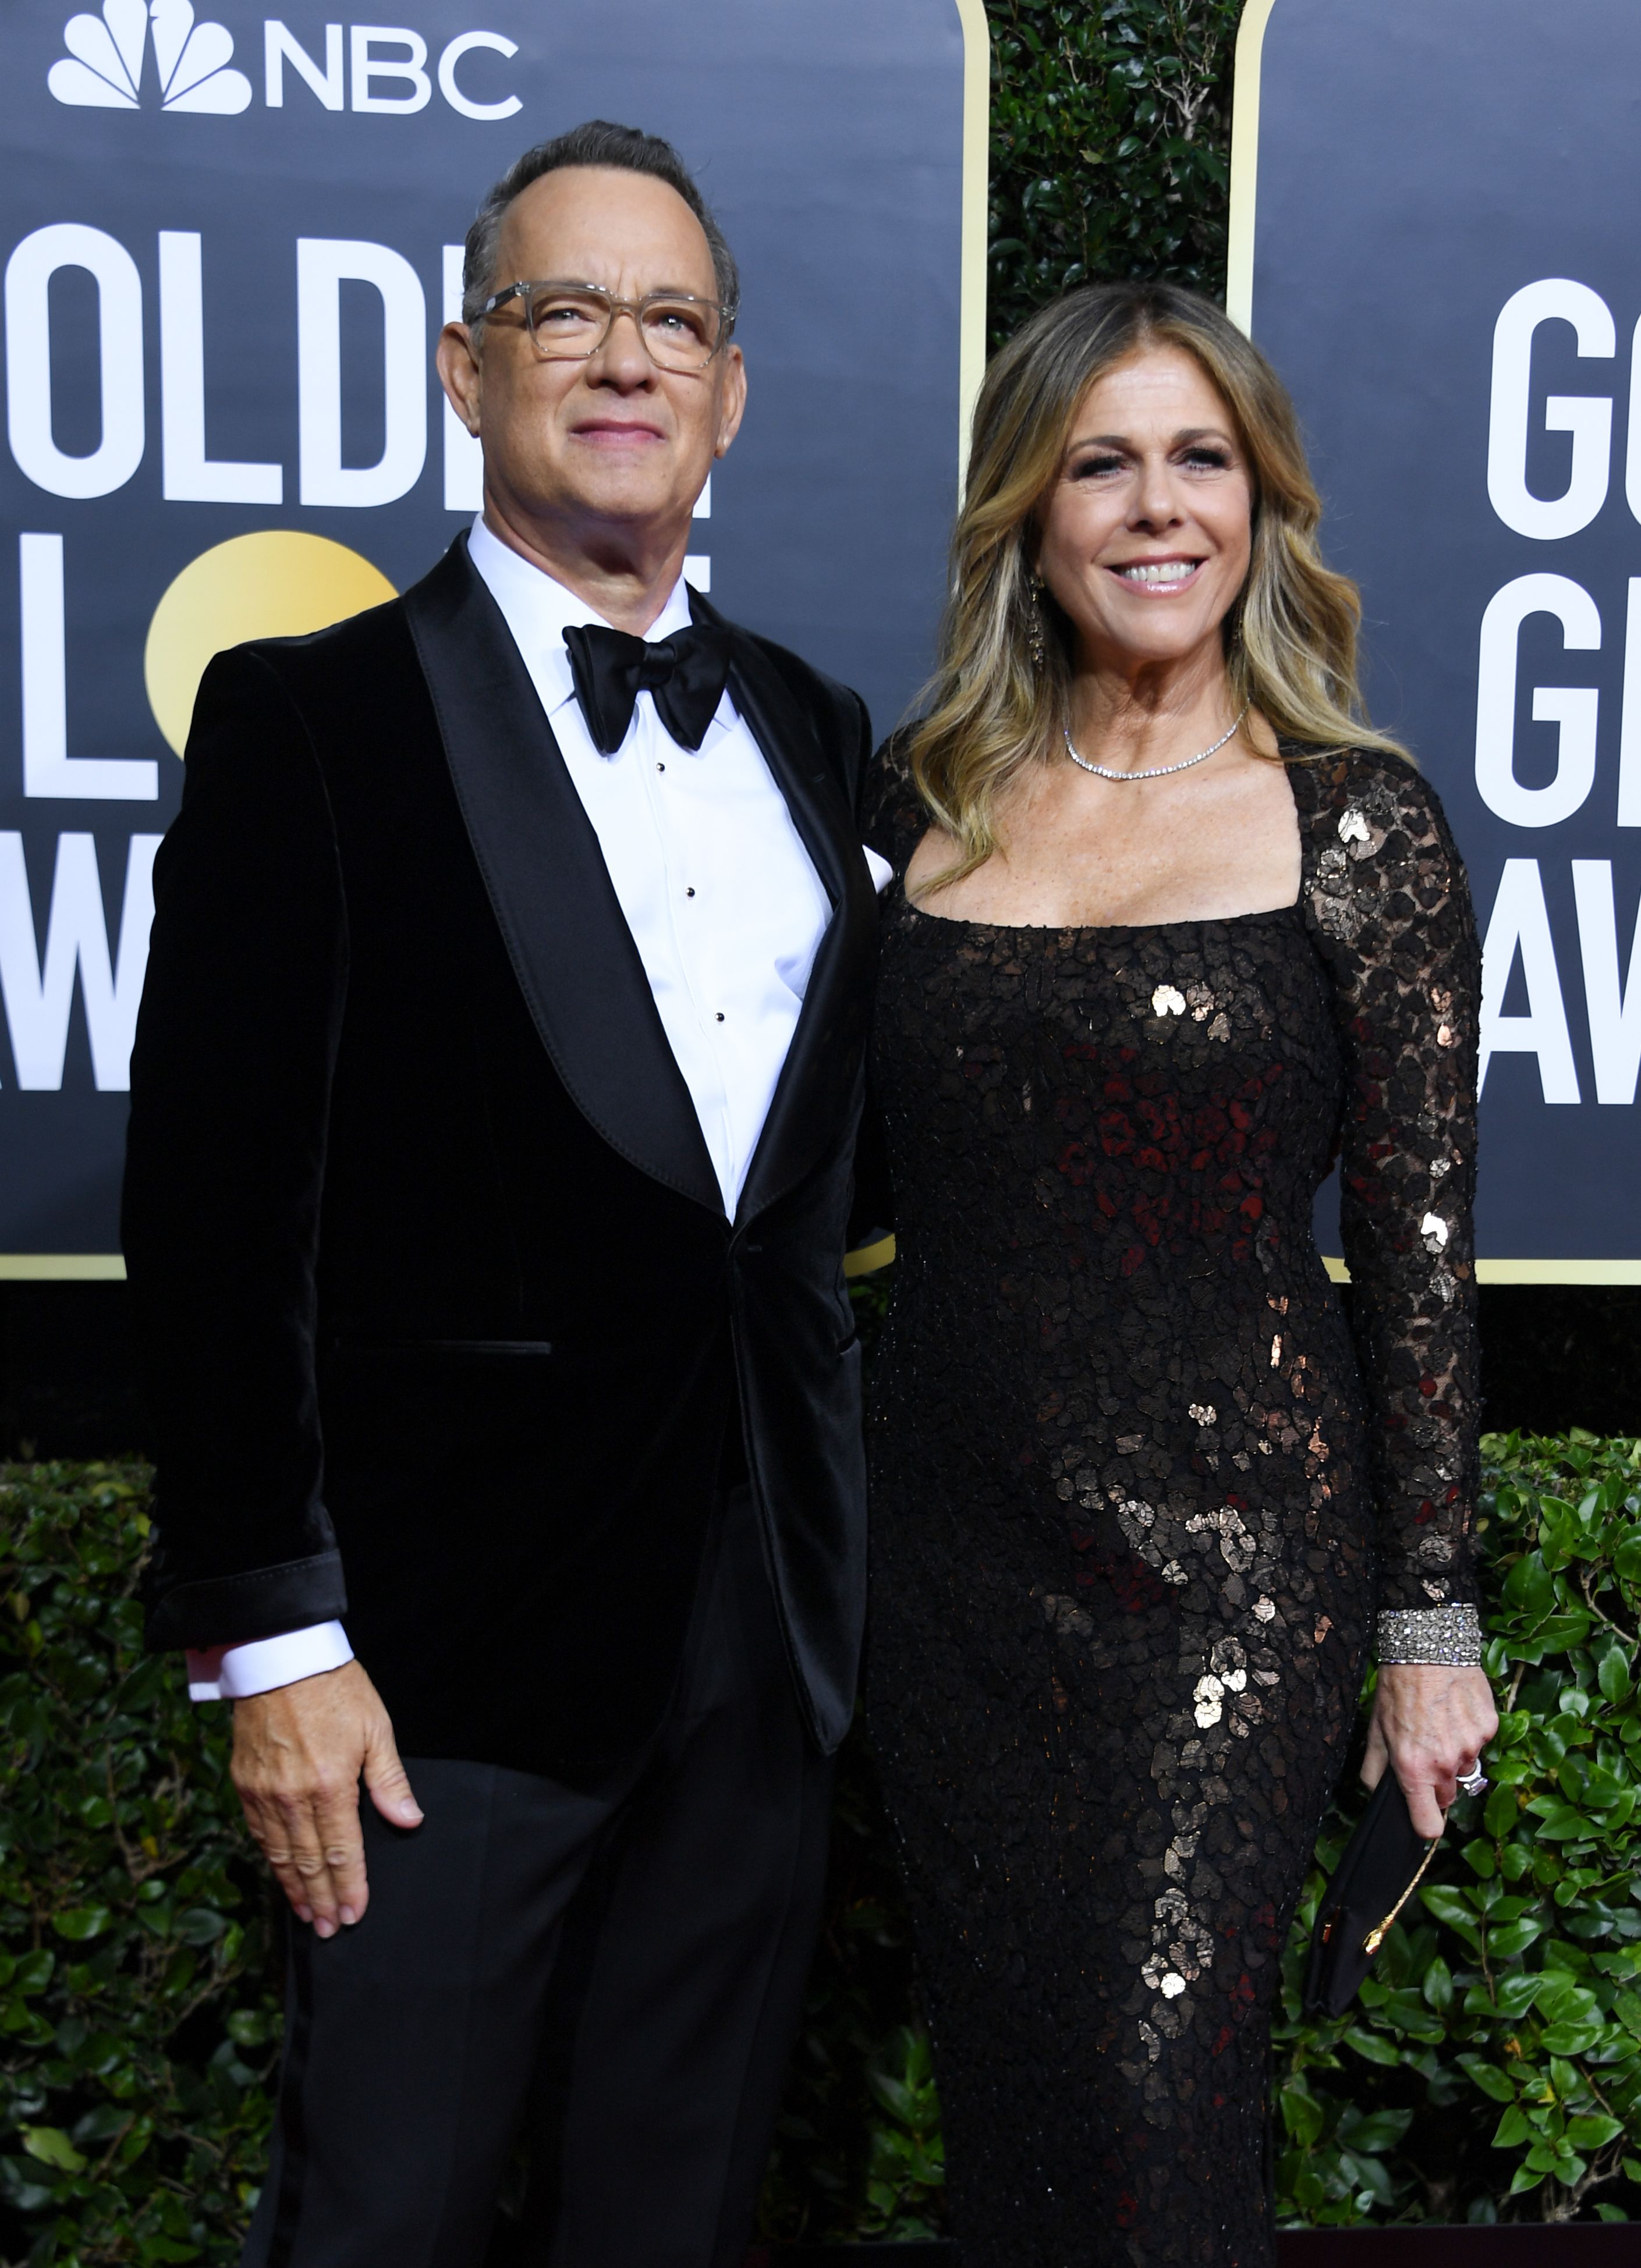 El actor Tom Hanks y su esposa Rita Wilson llegan a la 77a entrega anual de los Globos de Oro el 5 de enero de 2020 en el hotel The Beverly Hilton en Beverly Hills, California. | Foto: Getty Images